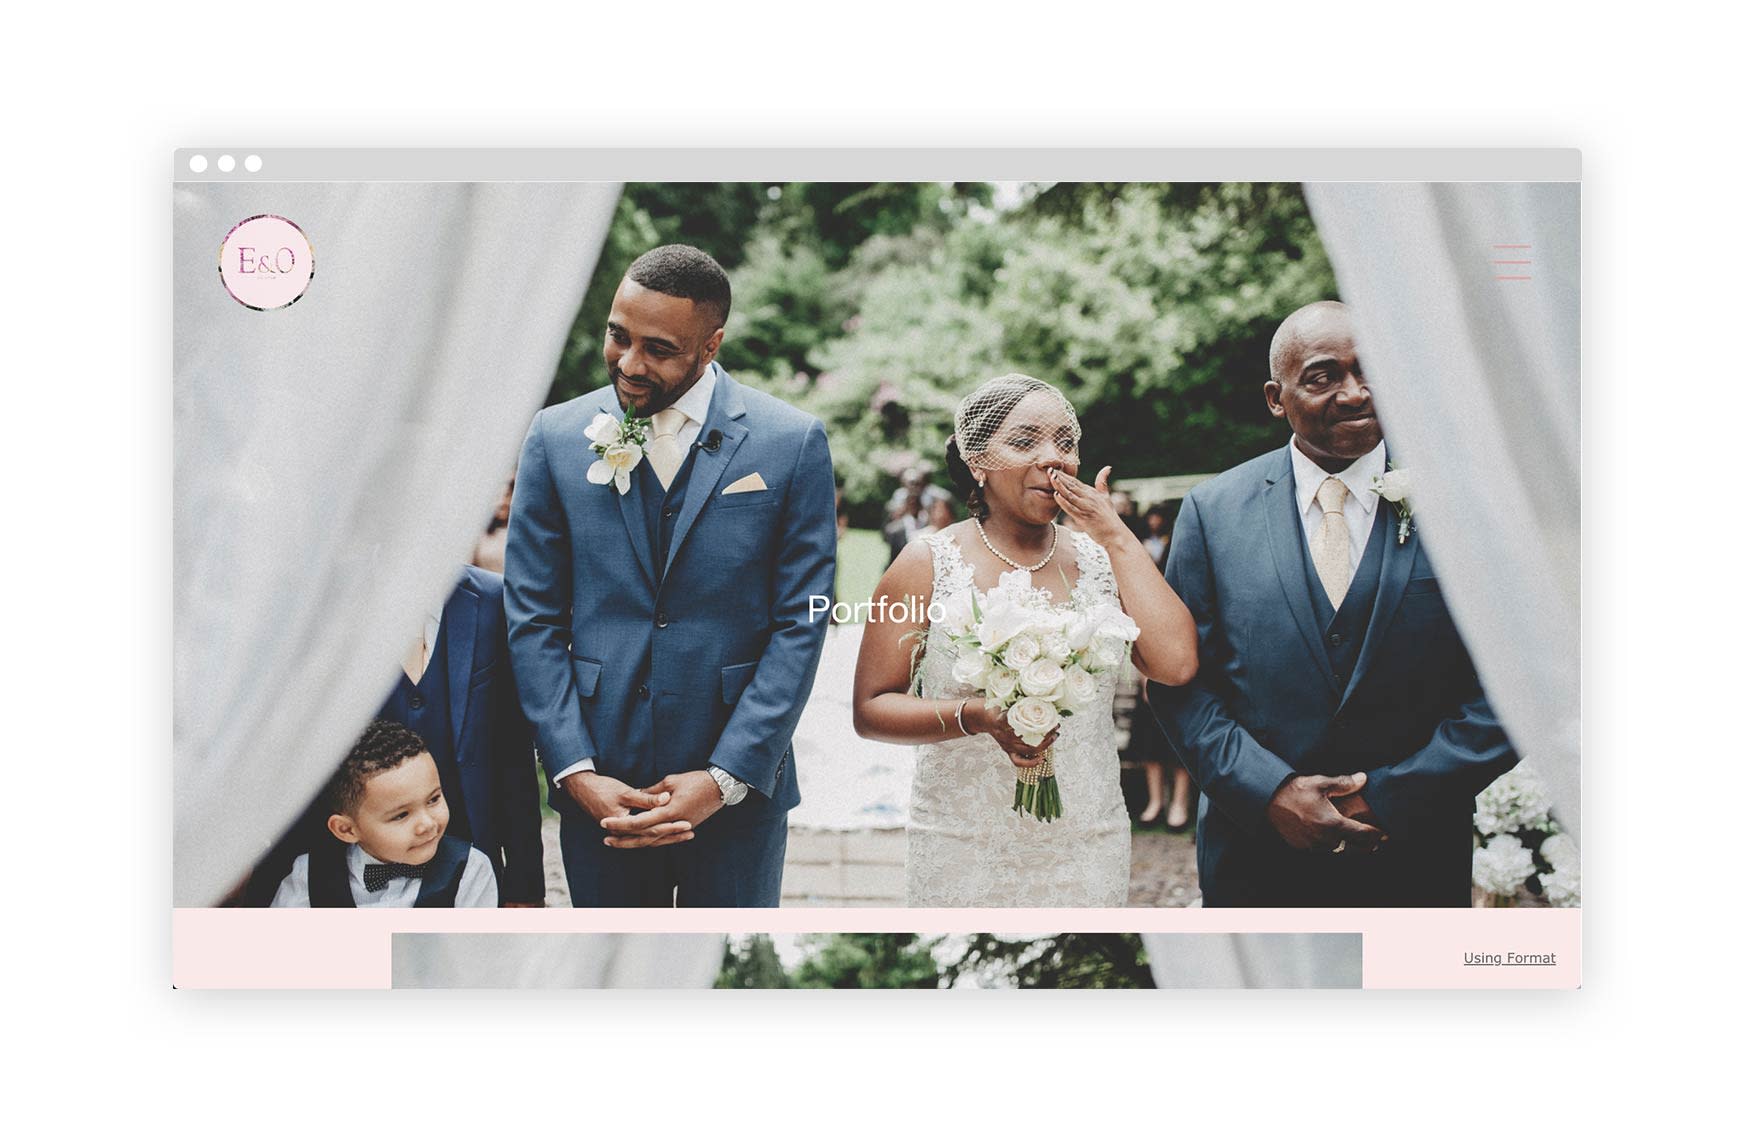 E_O-wedding-portfolio-website